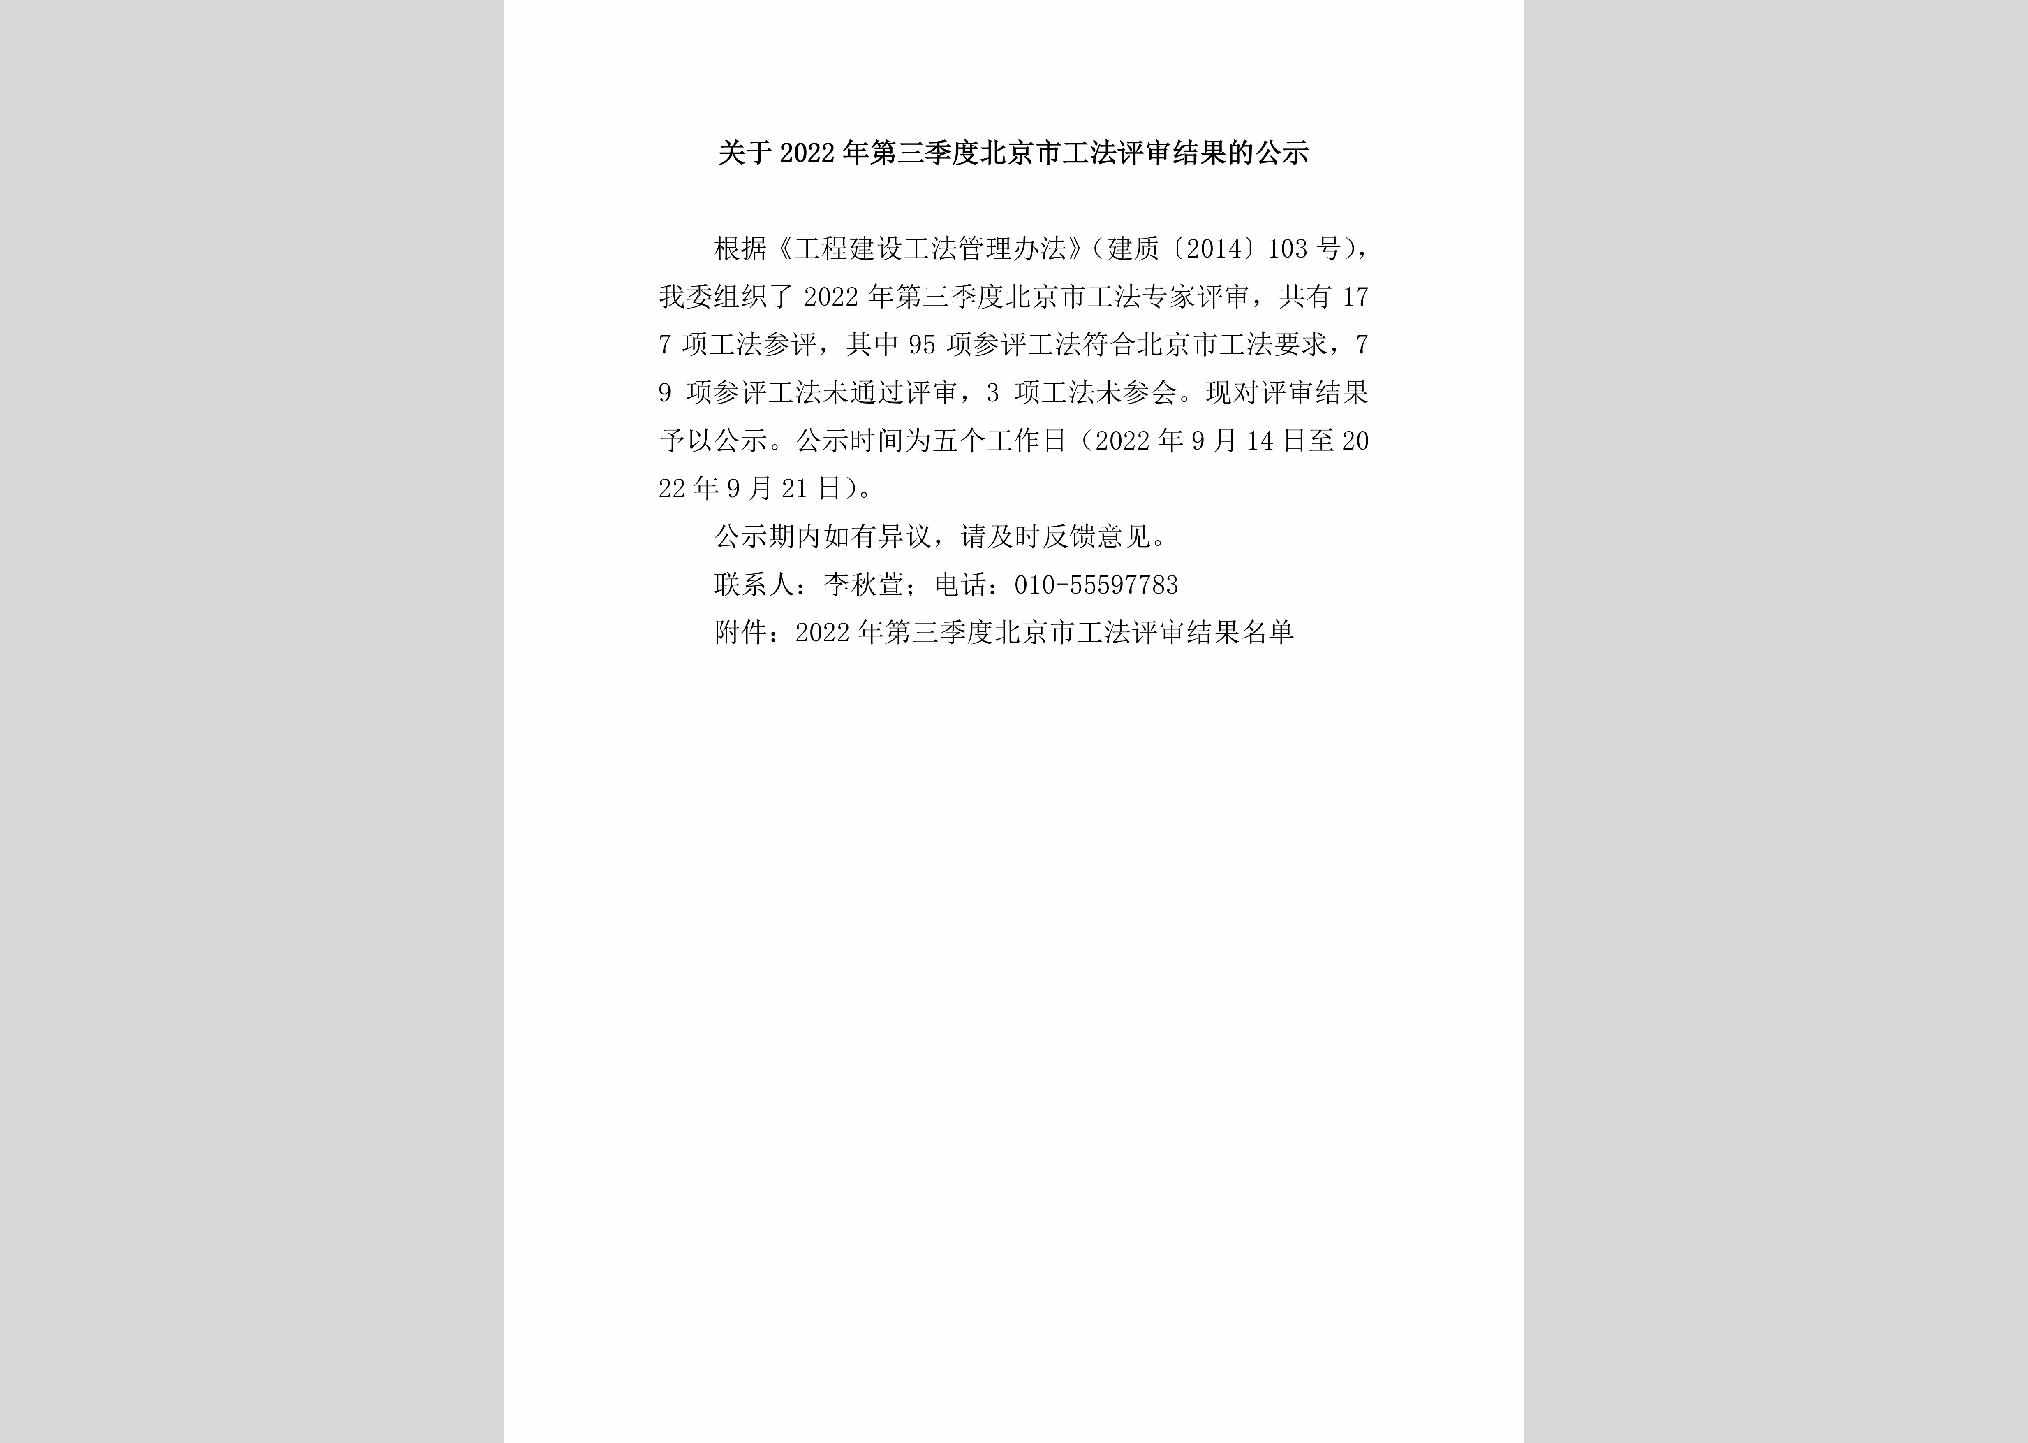 BJ-GFPSJG-2022：关于2022年第三季度北京市工法评审结果的公示